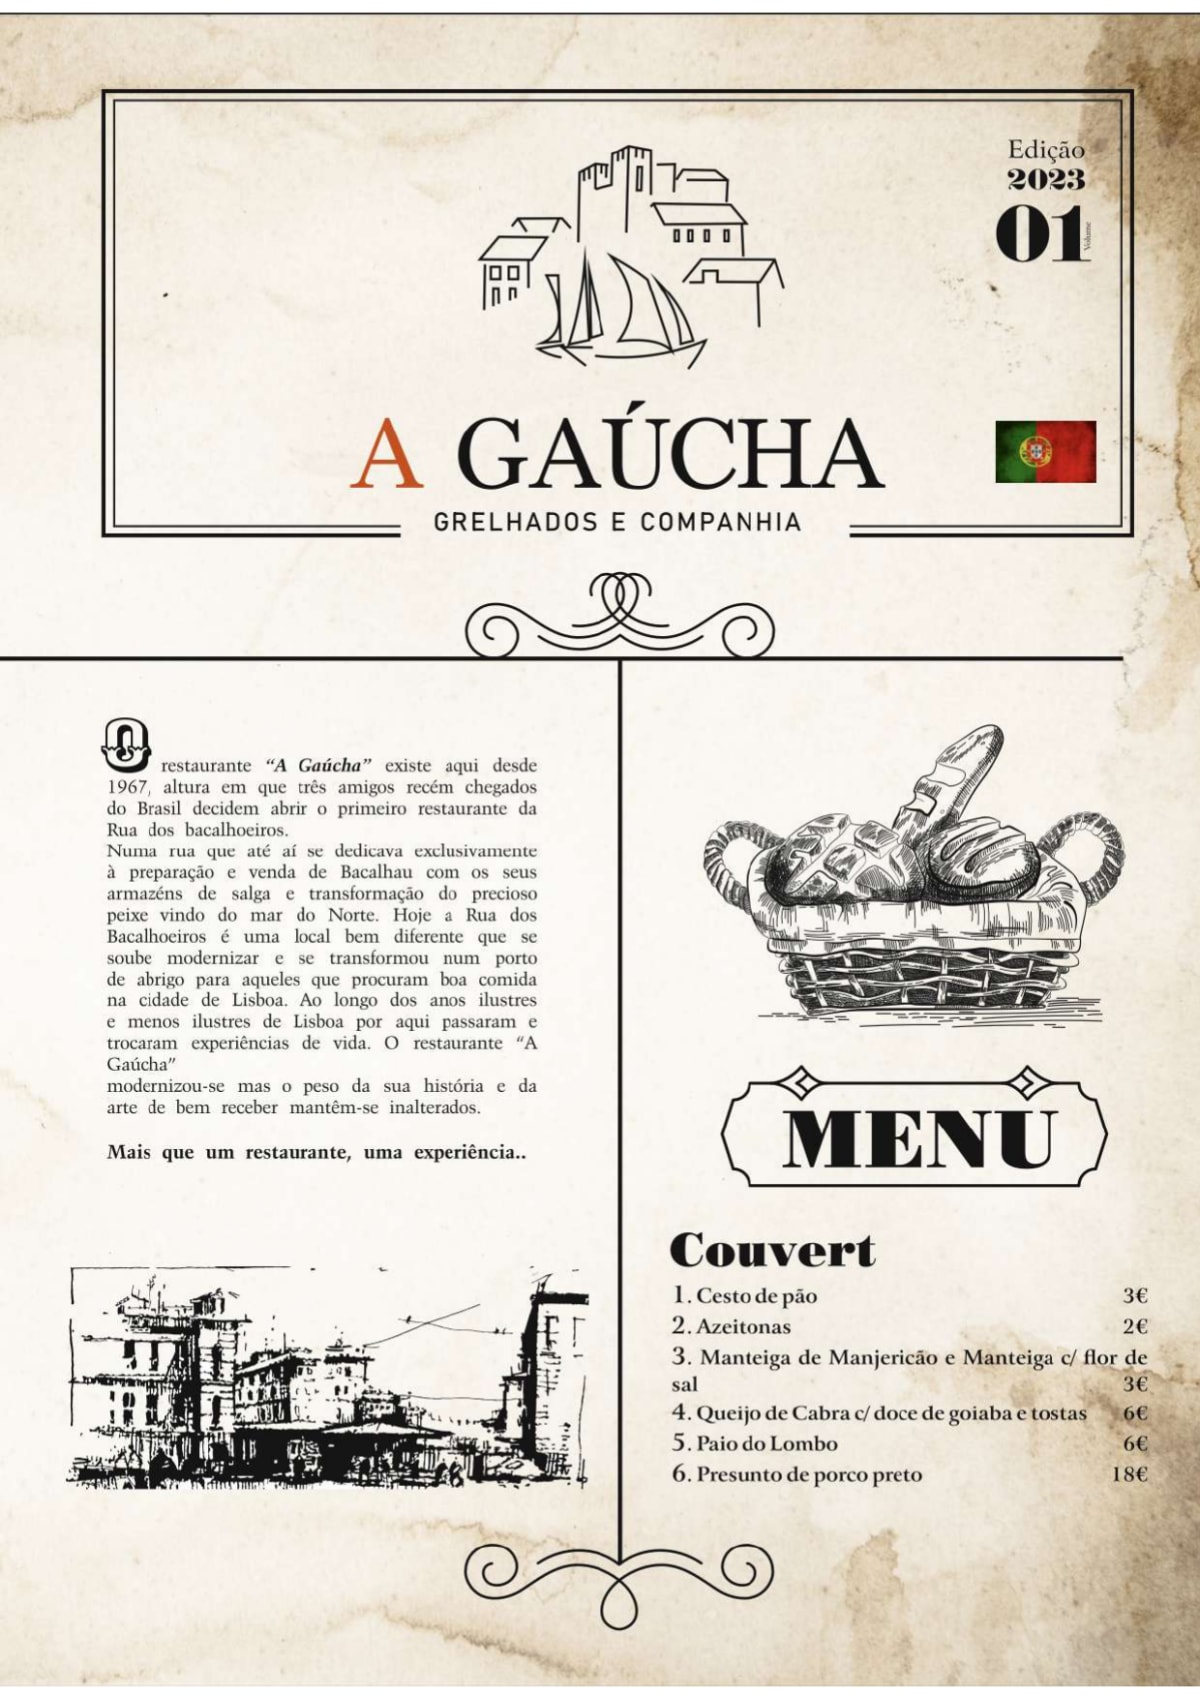 A Gaúcha – Grelhados e Companhia menu